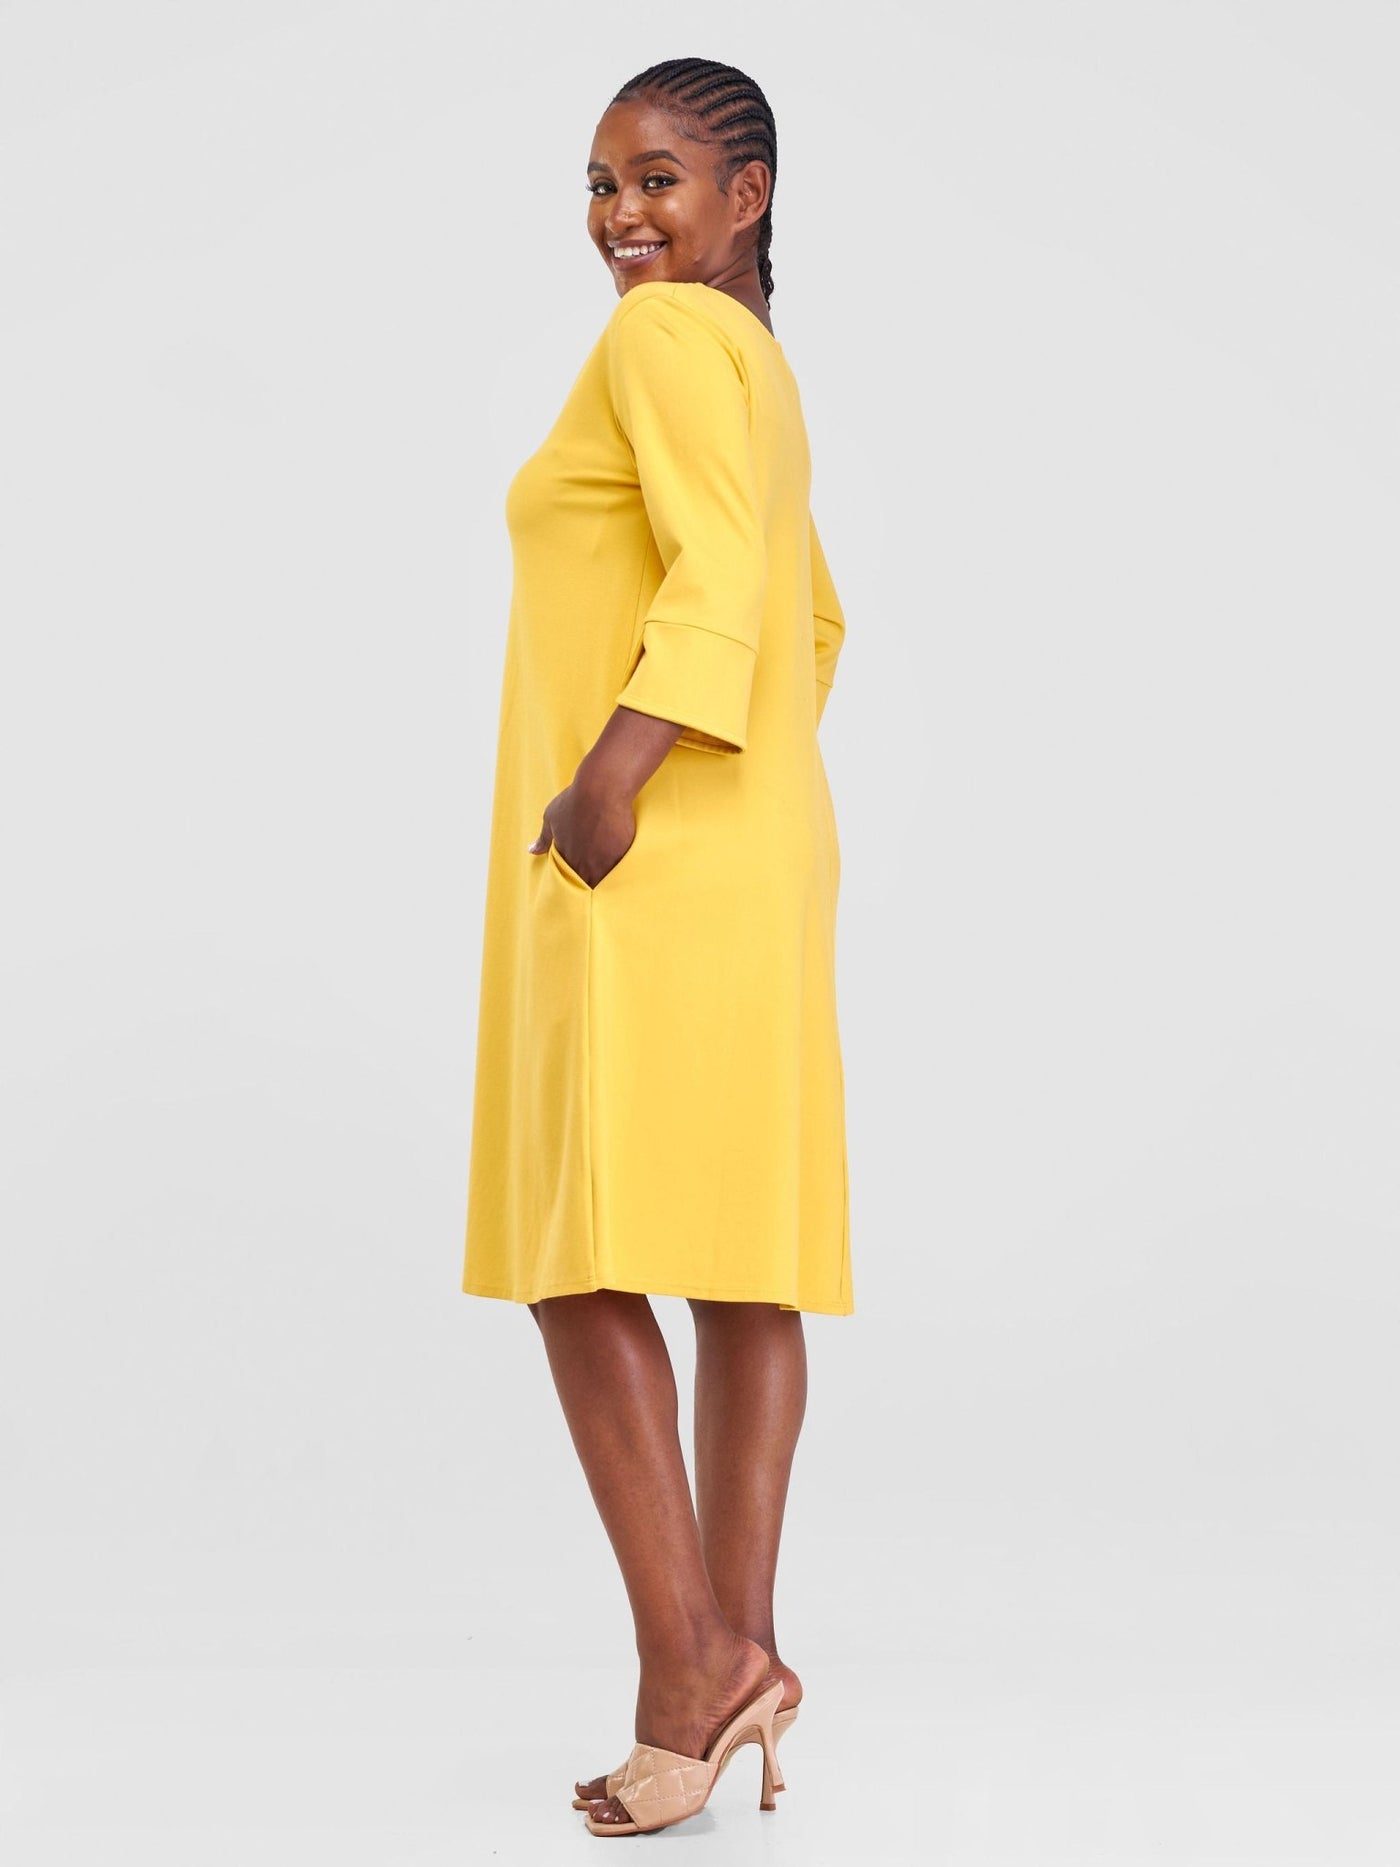 Vivo Zawadi Keyhole Dress - Yellow - Shopzetu